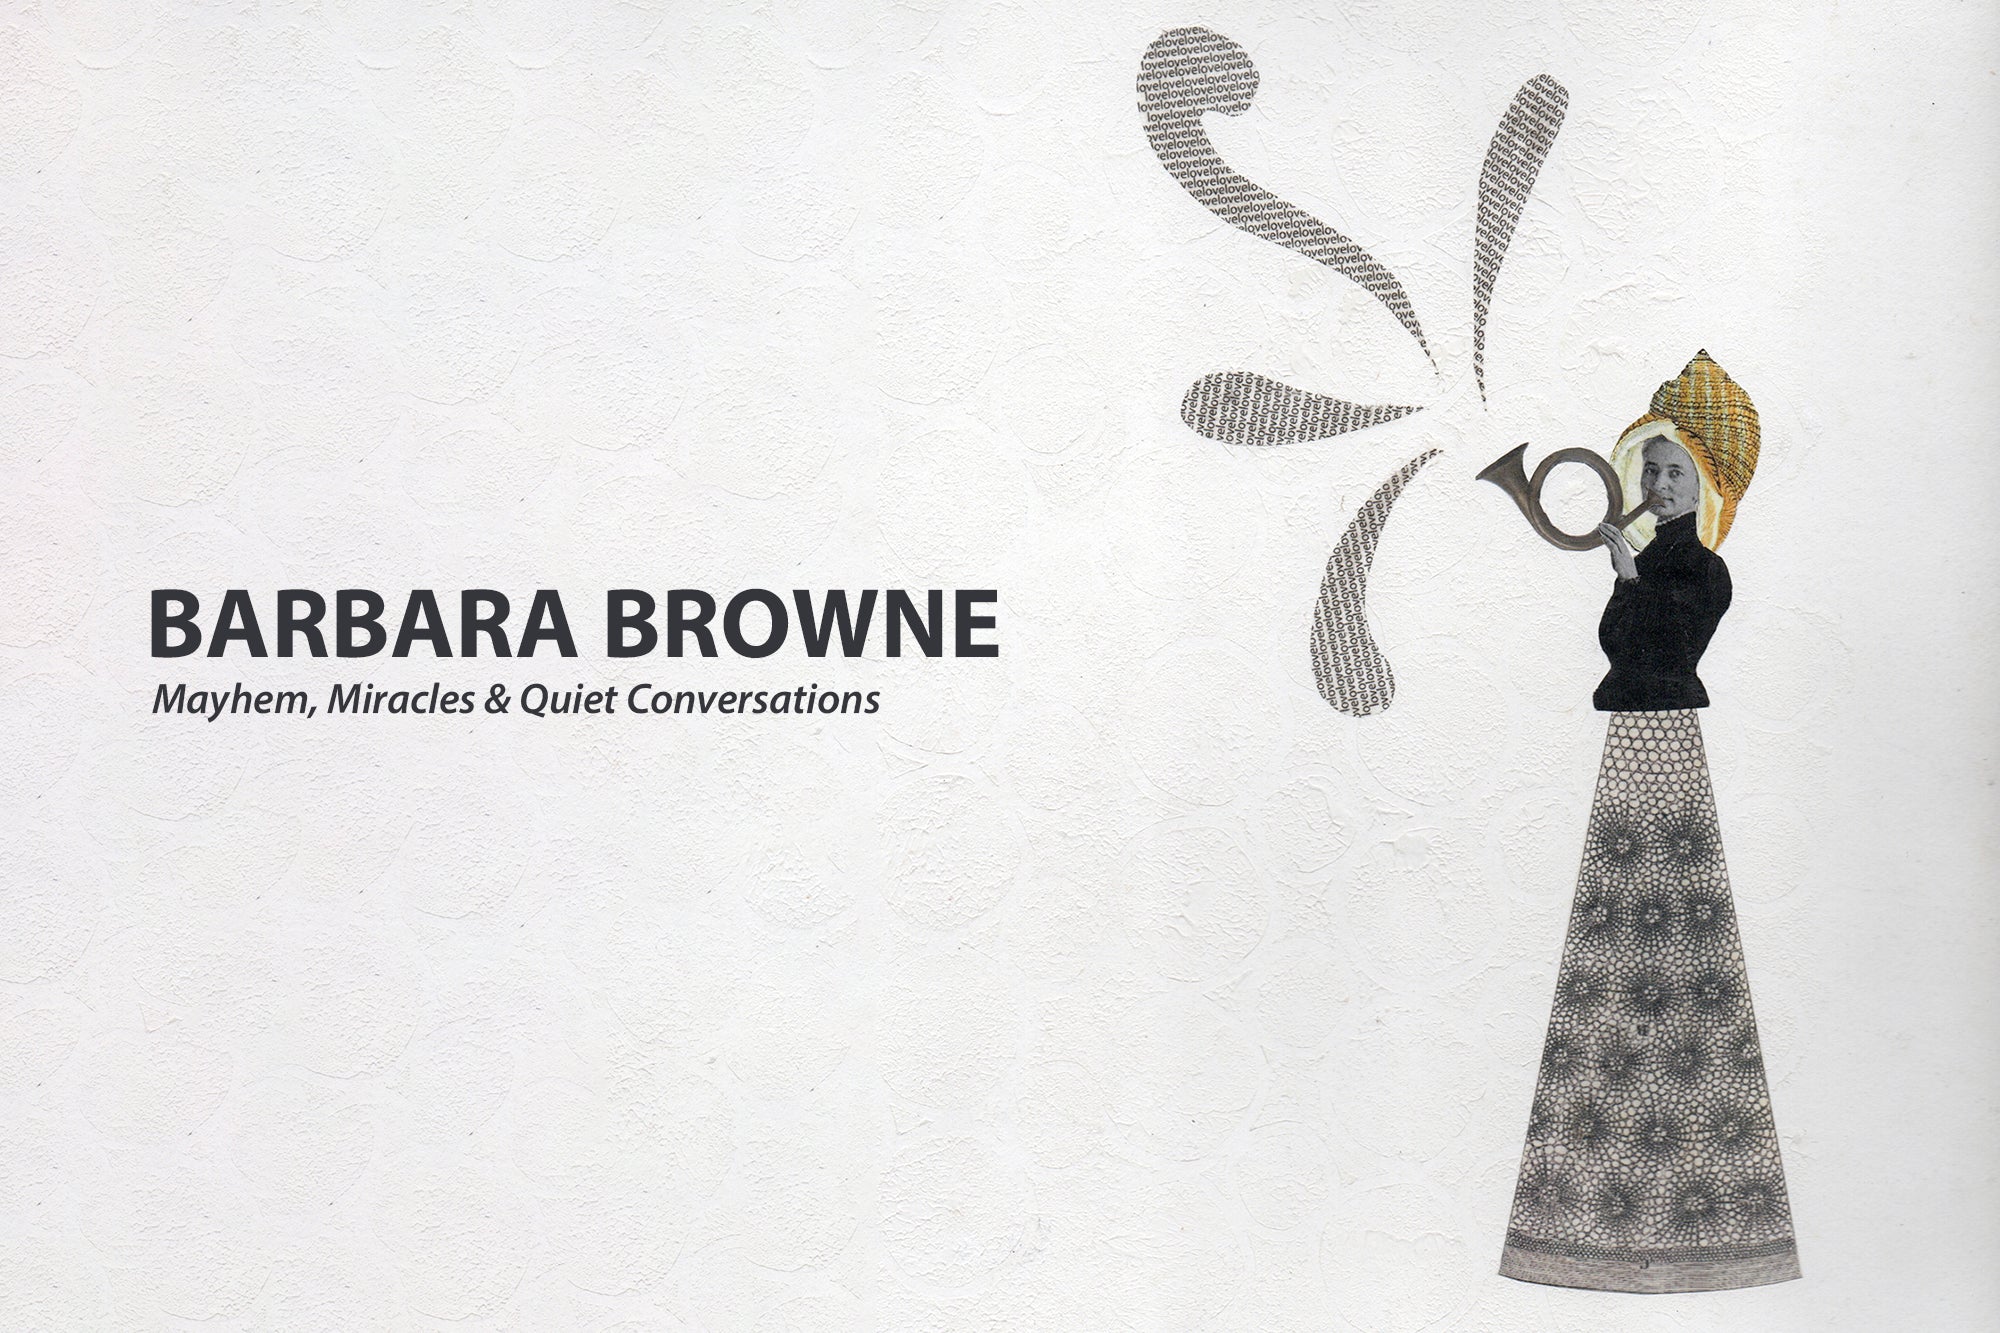 Barbara Browne ARTWALL Exhibition